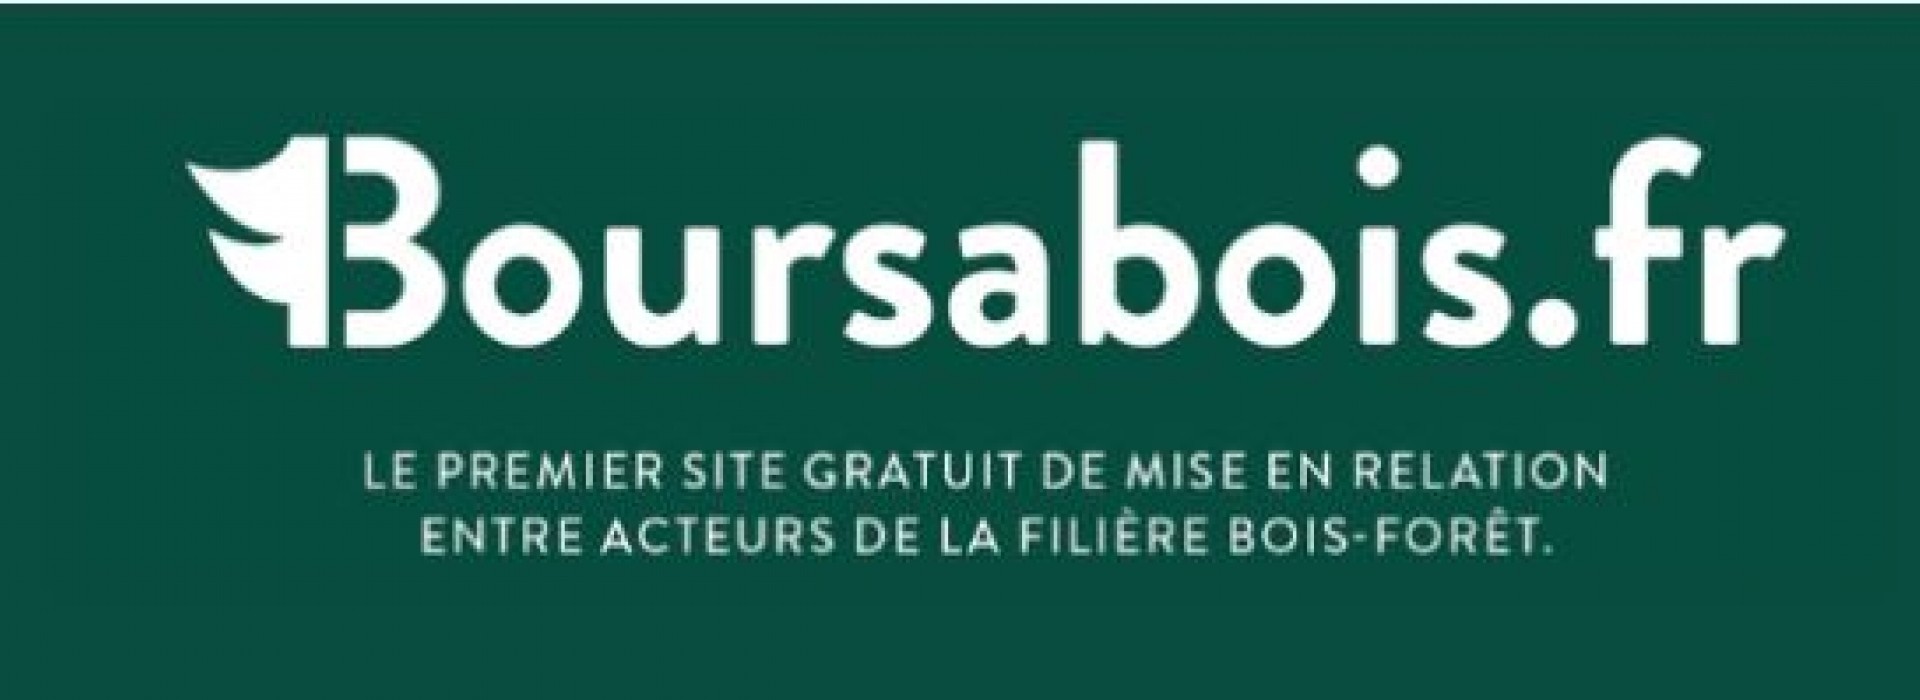 Lancement de Boursabois.fr : plateforme 100% gratuite